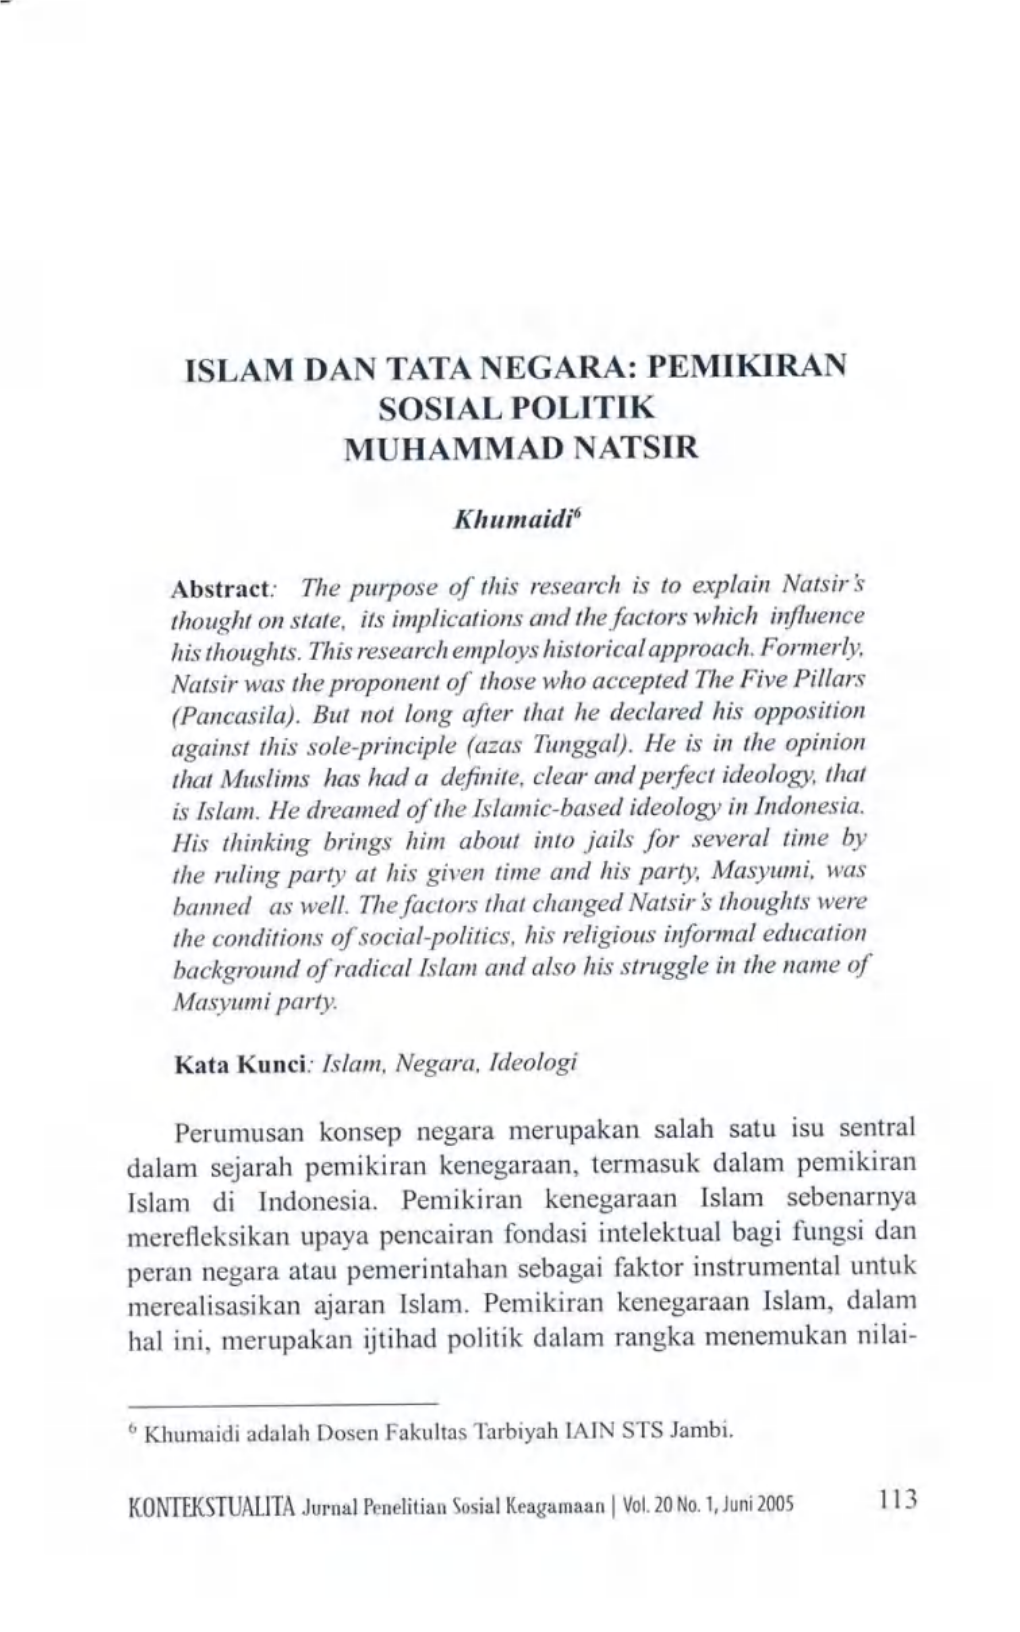 Islam Dan Tata Negara: Pemikiran Muhammad Natsir